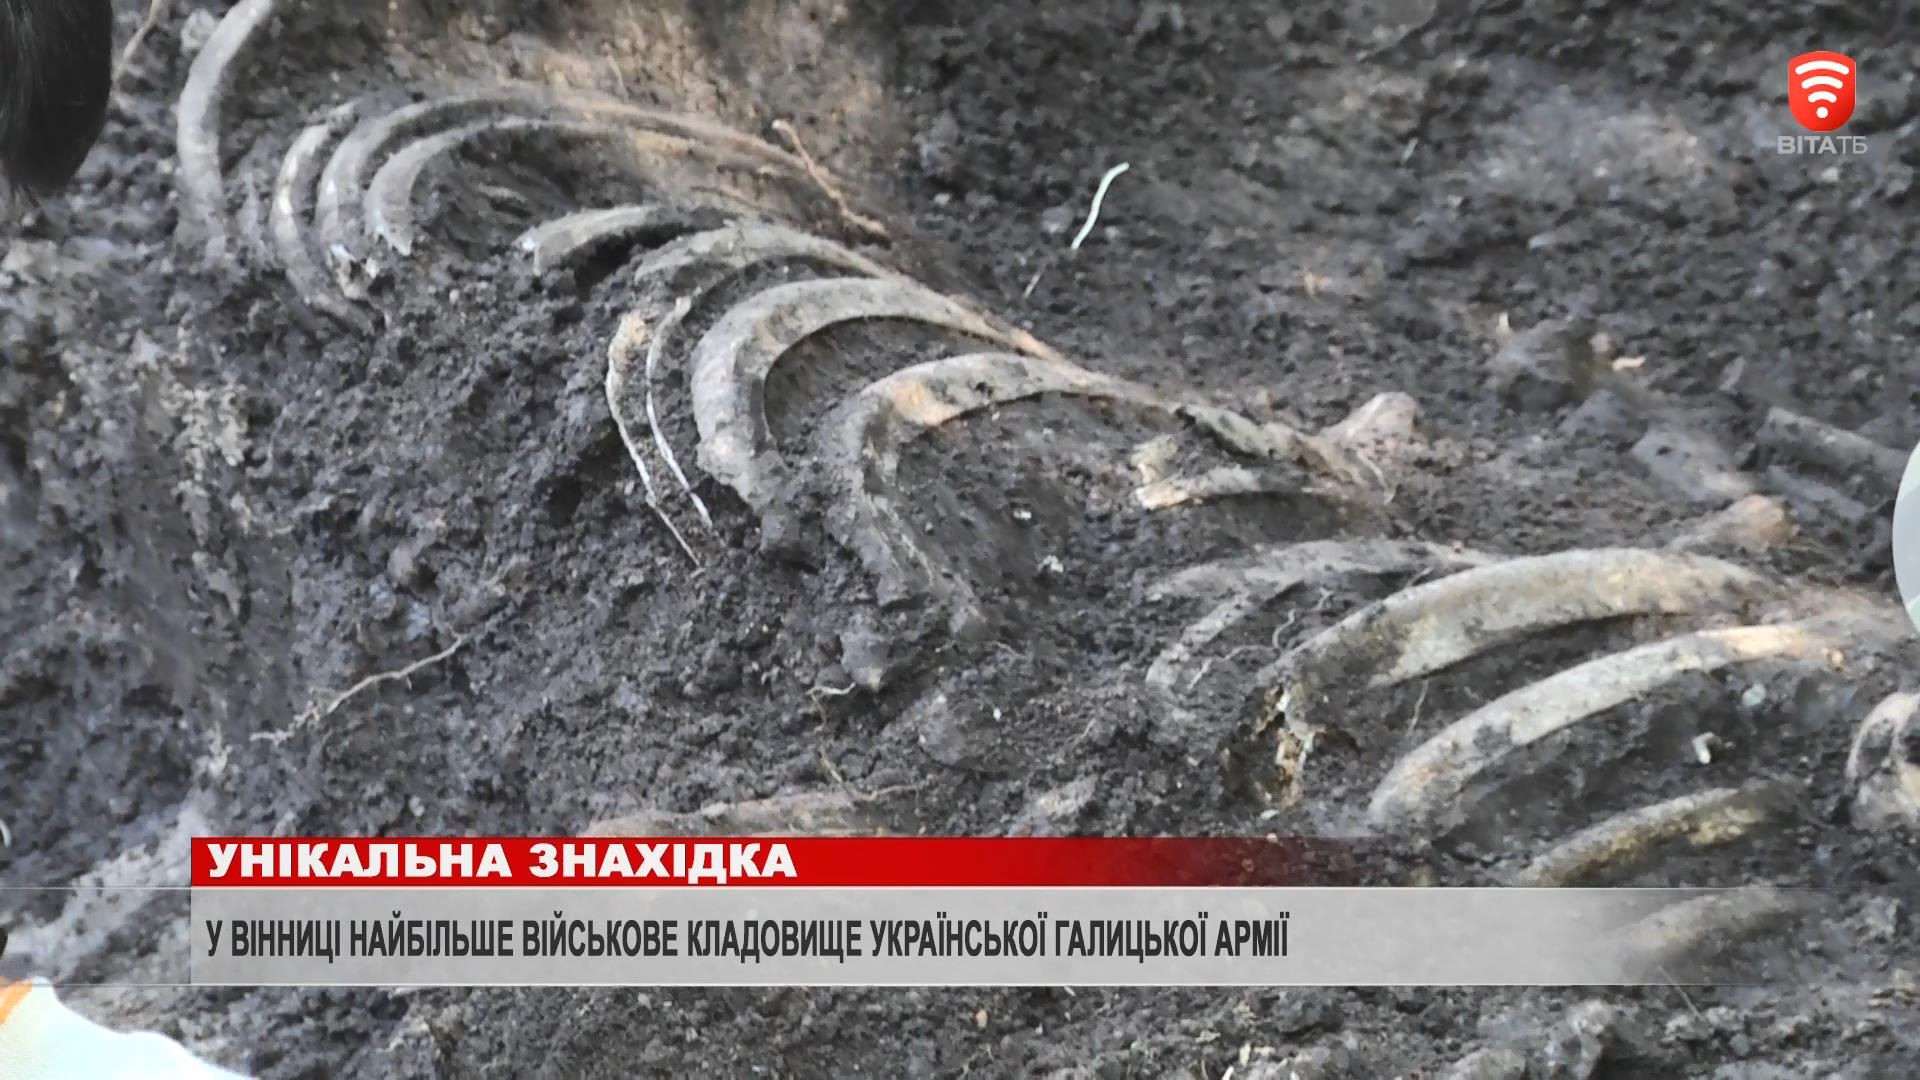 ослідники виявили рештки коня, якого поховали на окраїні кладовища десятками років пізніше, а поруч розкопали насип з останками щонайменше семи людей